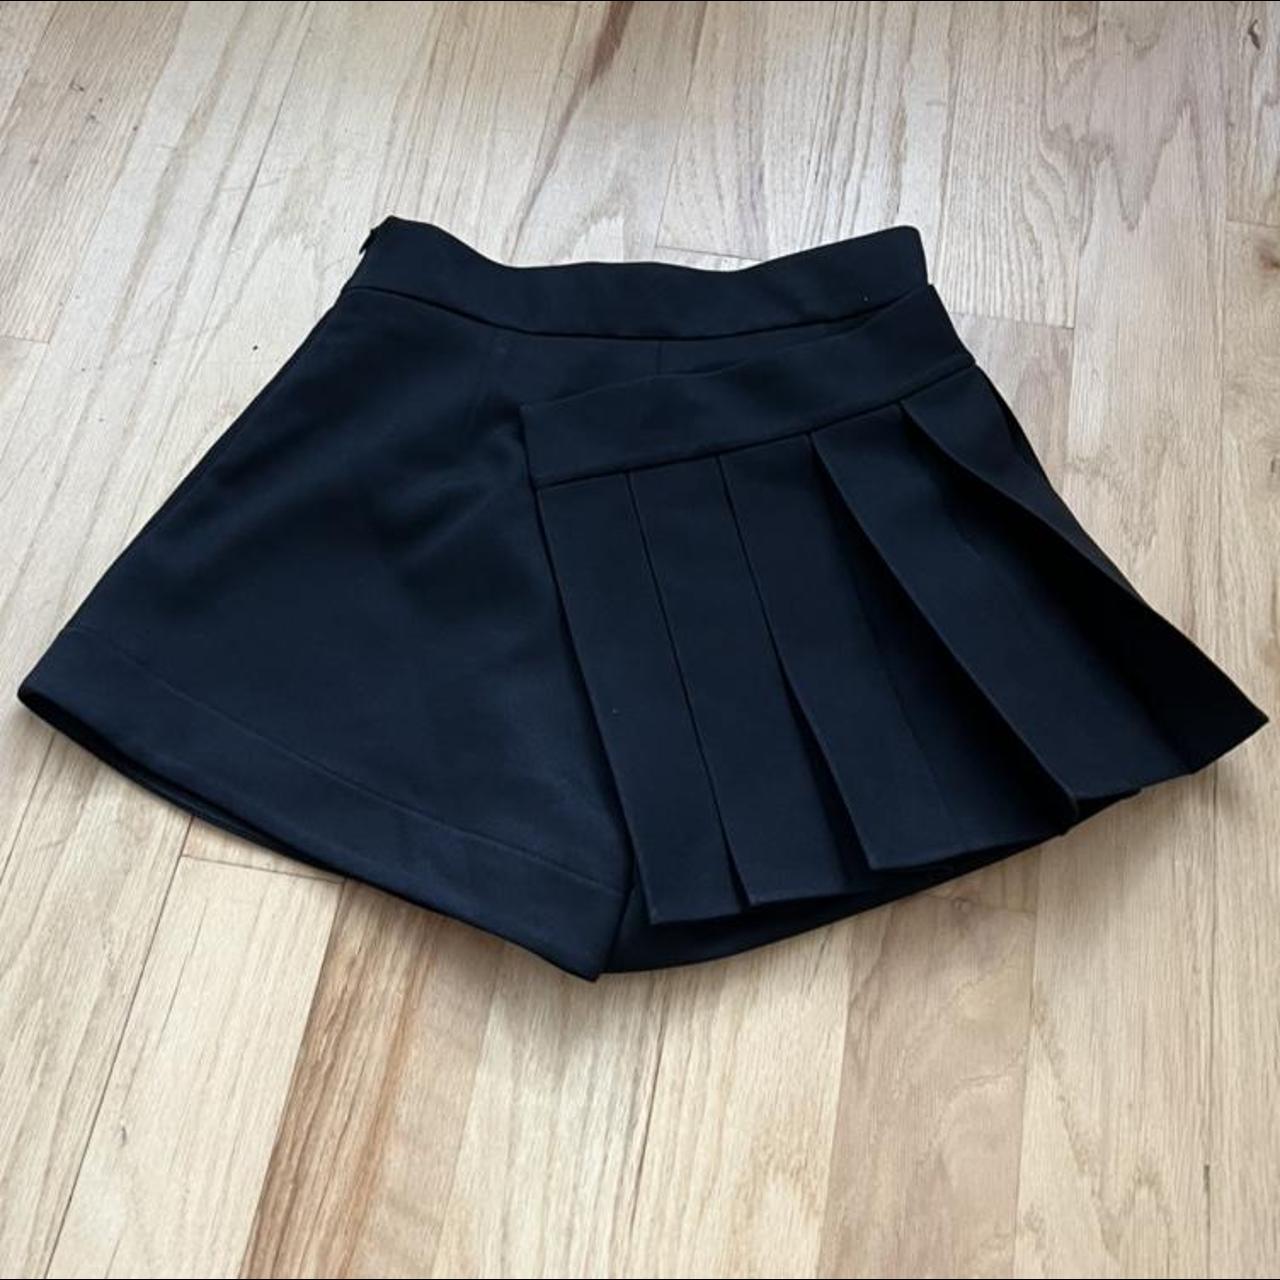 Ann Demeulemeester Women's Black Skirt